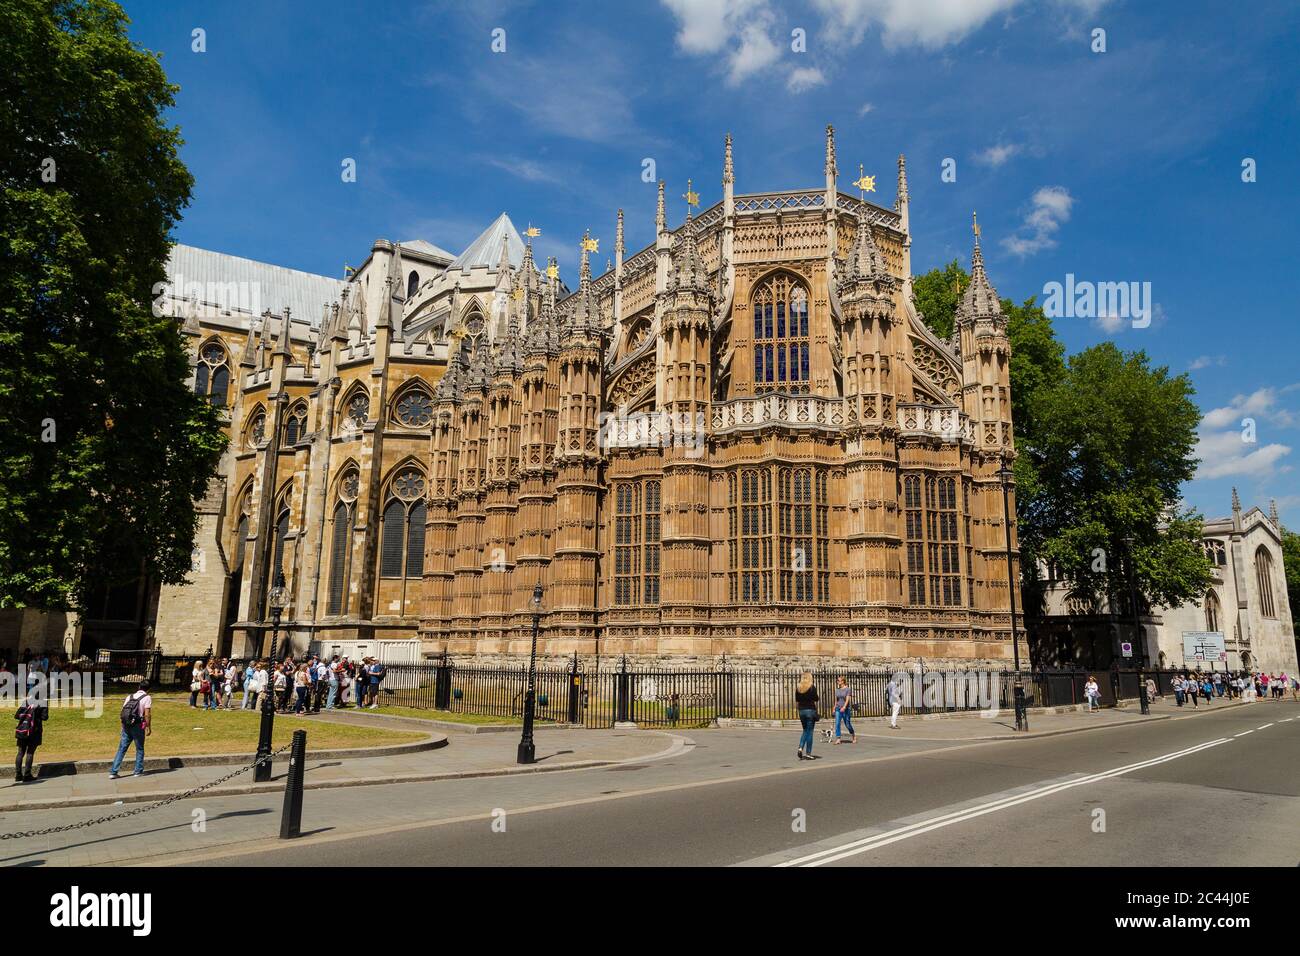 LONDRES, Royaume-Uni - 18 JUILLET 2015 : l'extérieur d'une partie de l'abbaye de Westminster pendant la journée. On peut voir les gens à l'extérieur. Banque D'Images